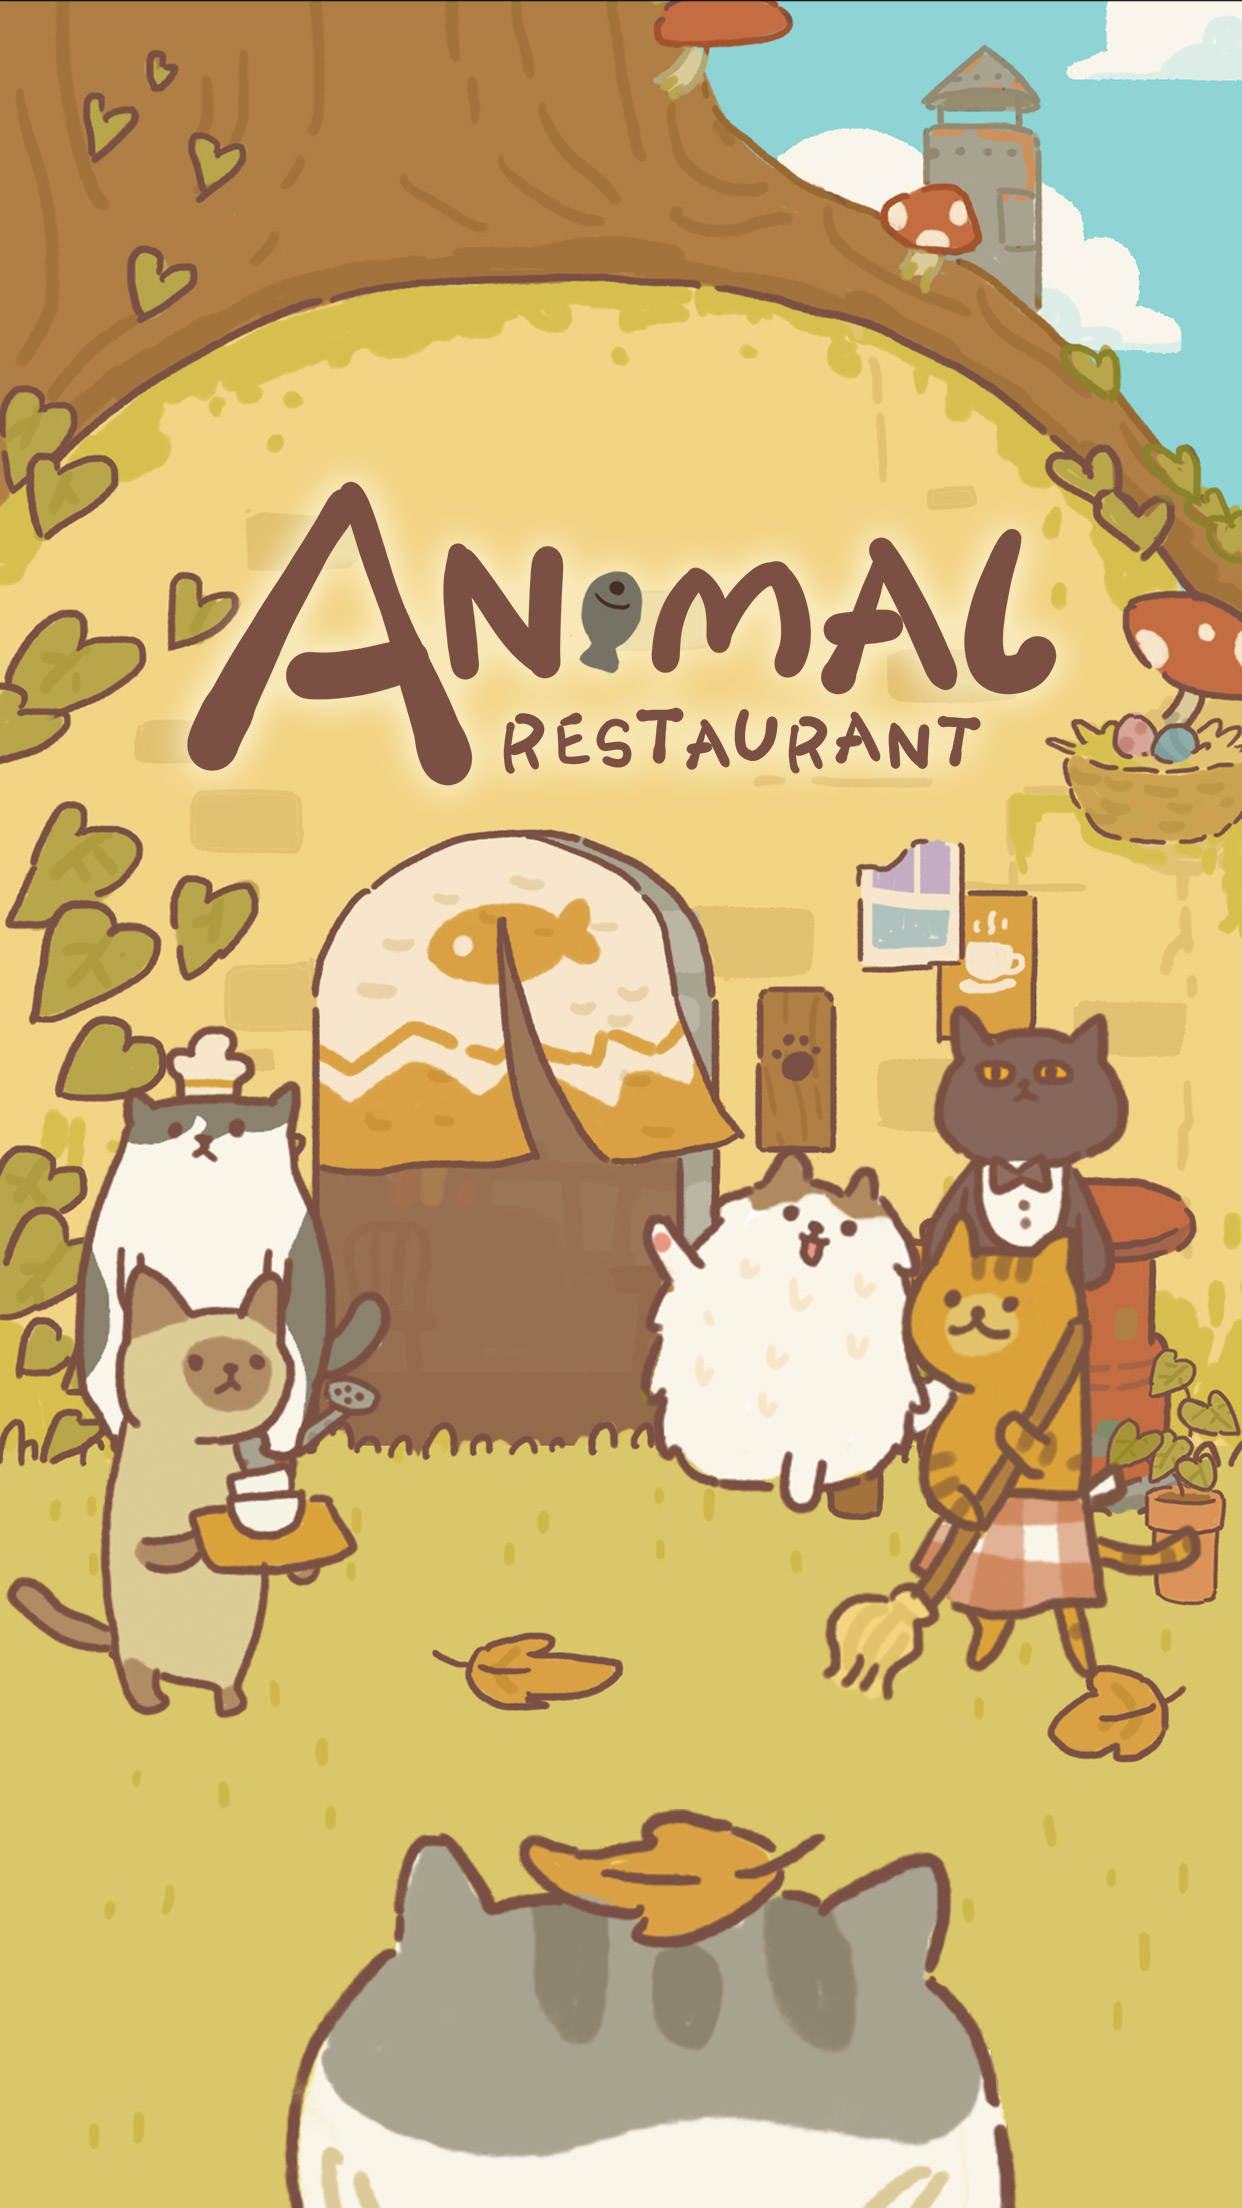 Screenshot 1 of Restaurante de animales 11.15